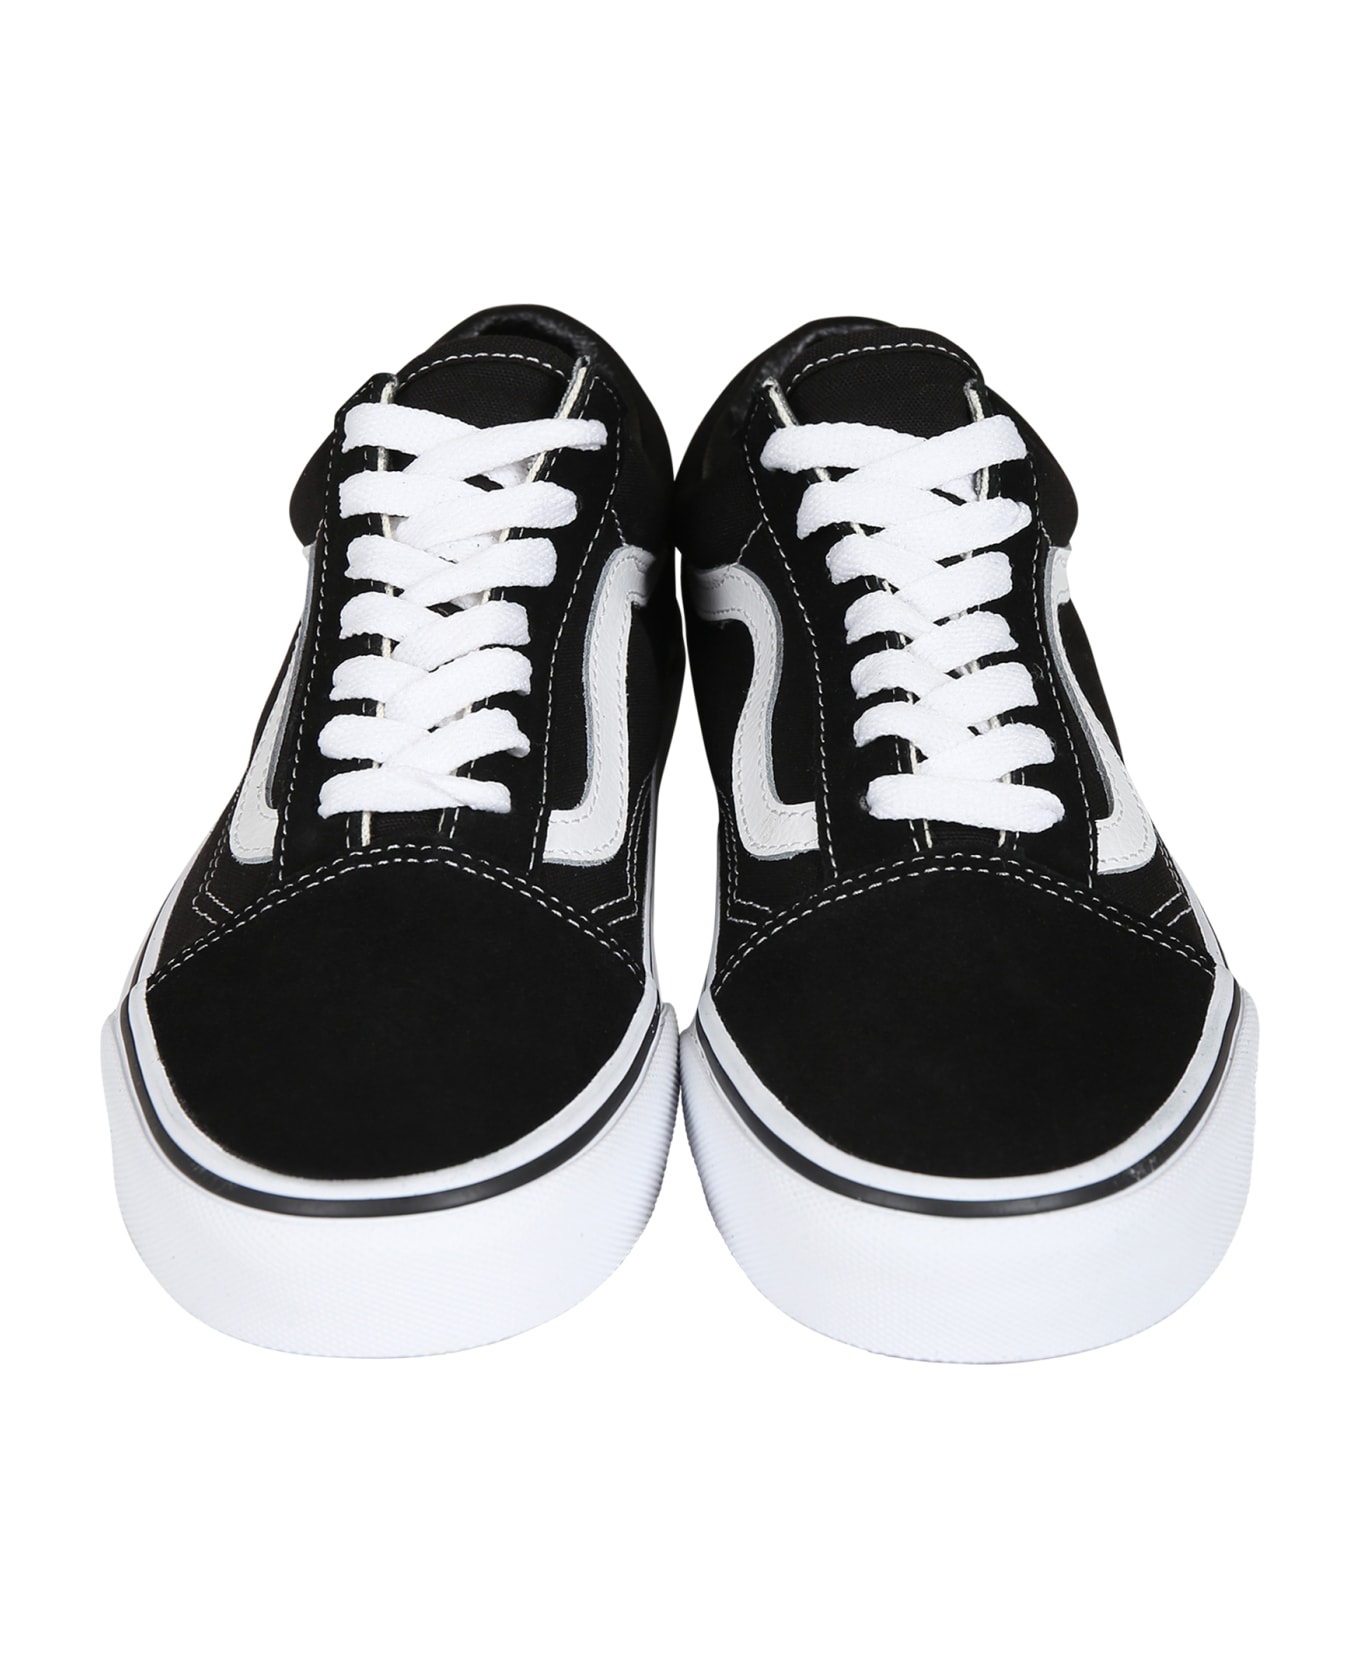 Vans Black Old School Sneakers For Kids - Black